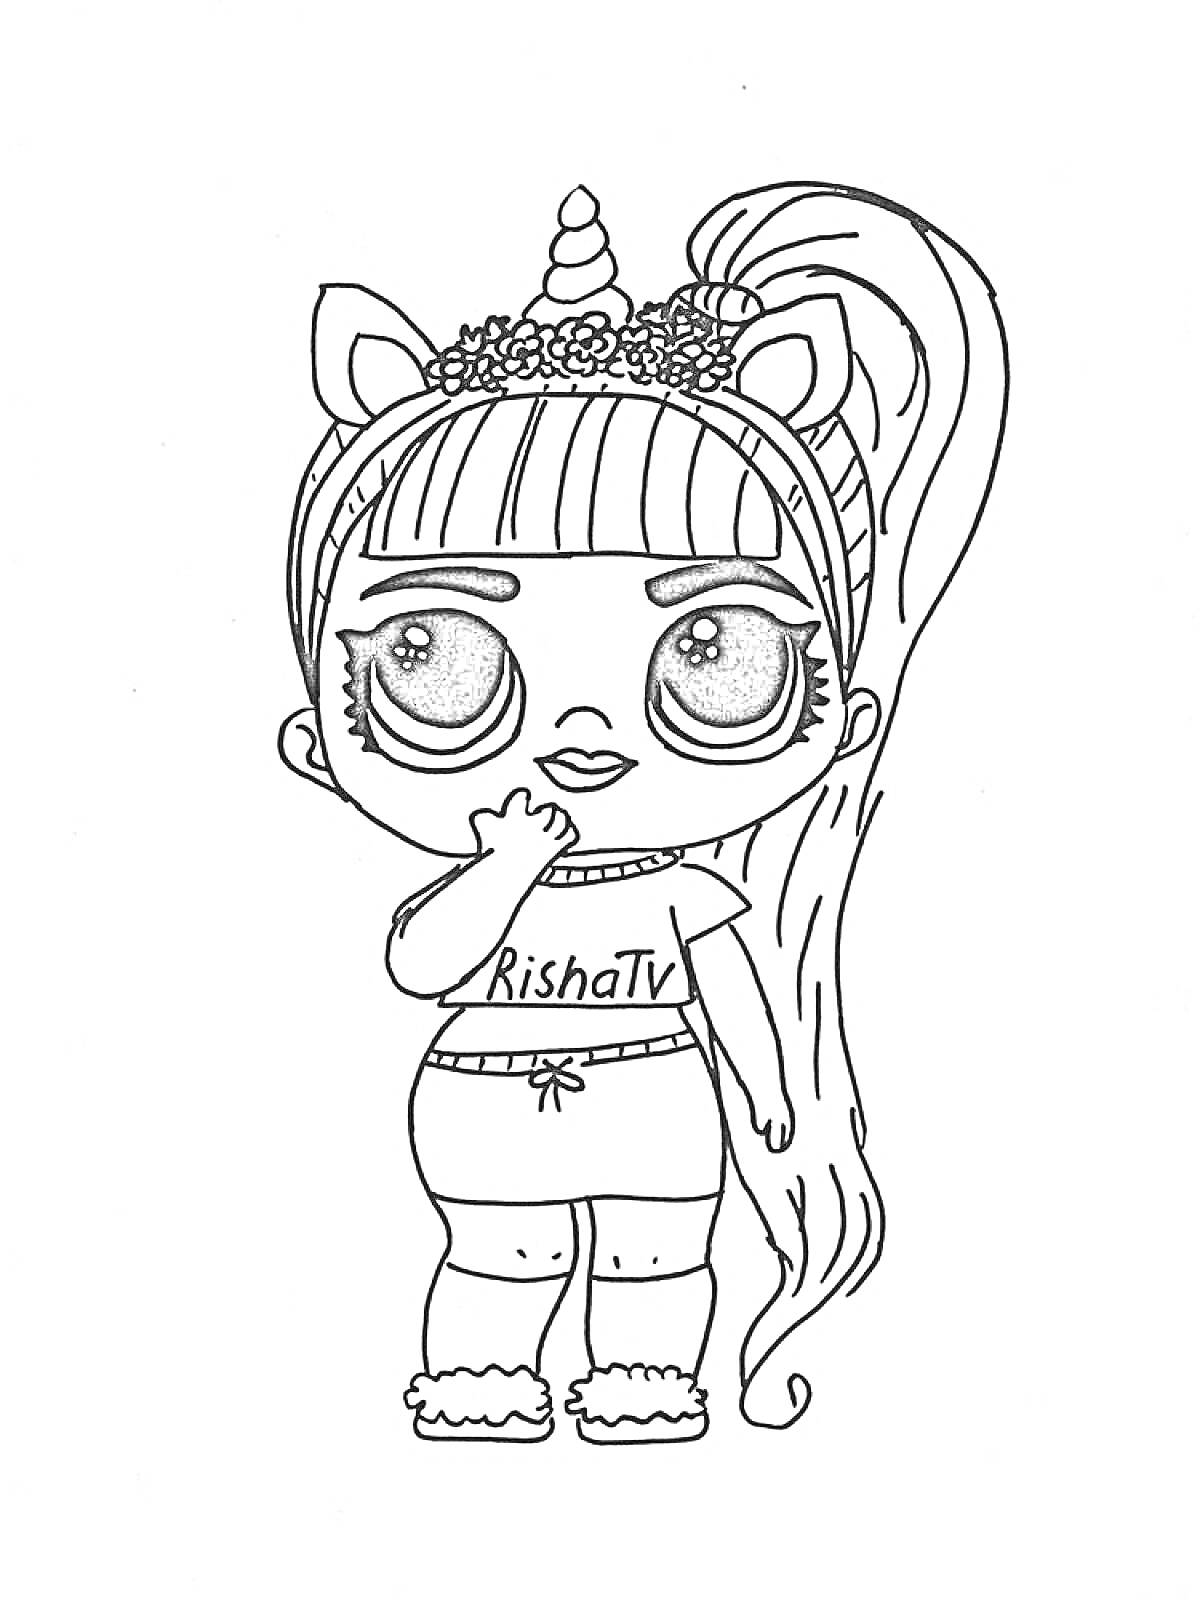 Раскраска Кукла Единорожка ЛОЛ с цветочным венком на голове, рогом единорога и длинными волосами, в футболке с надписью 'RishaTv', шортах и тапочках.